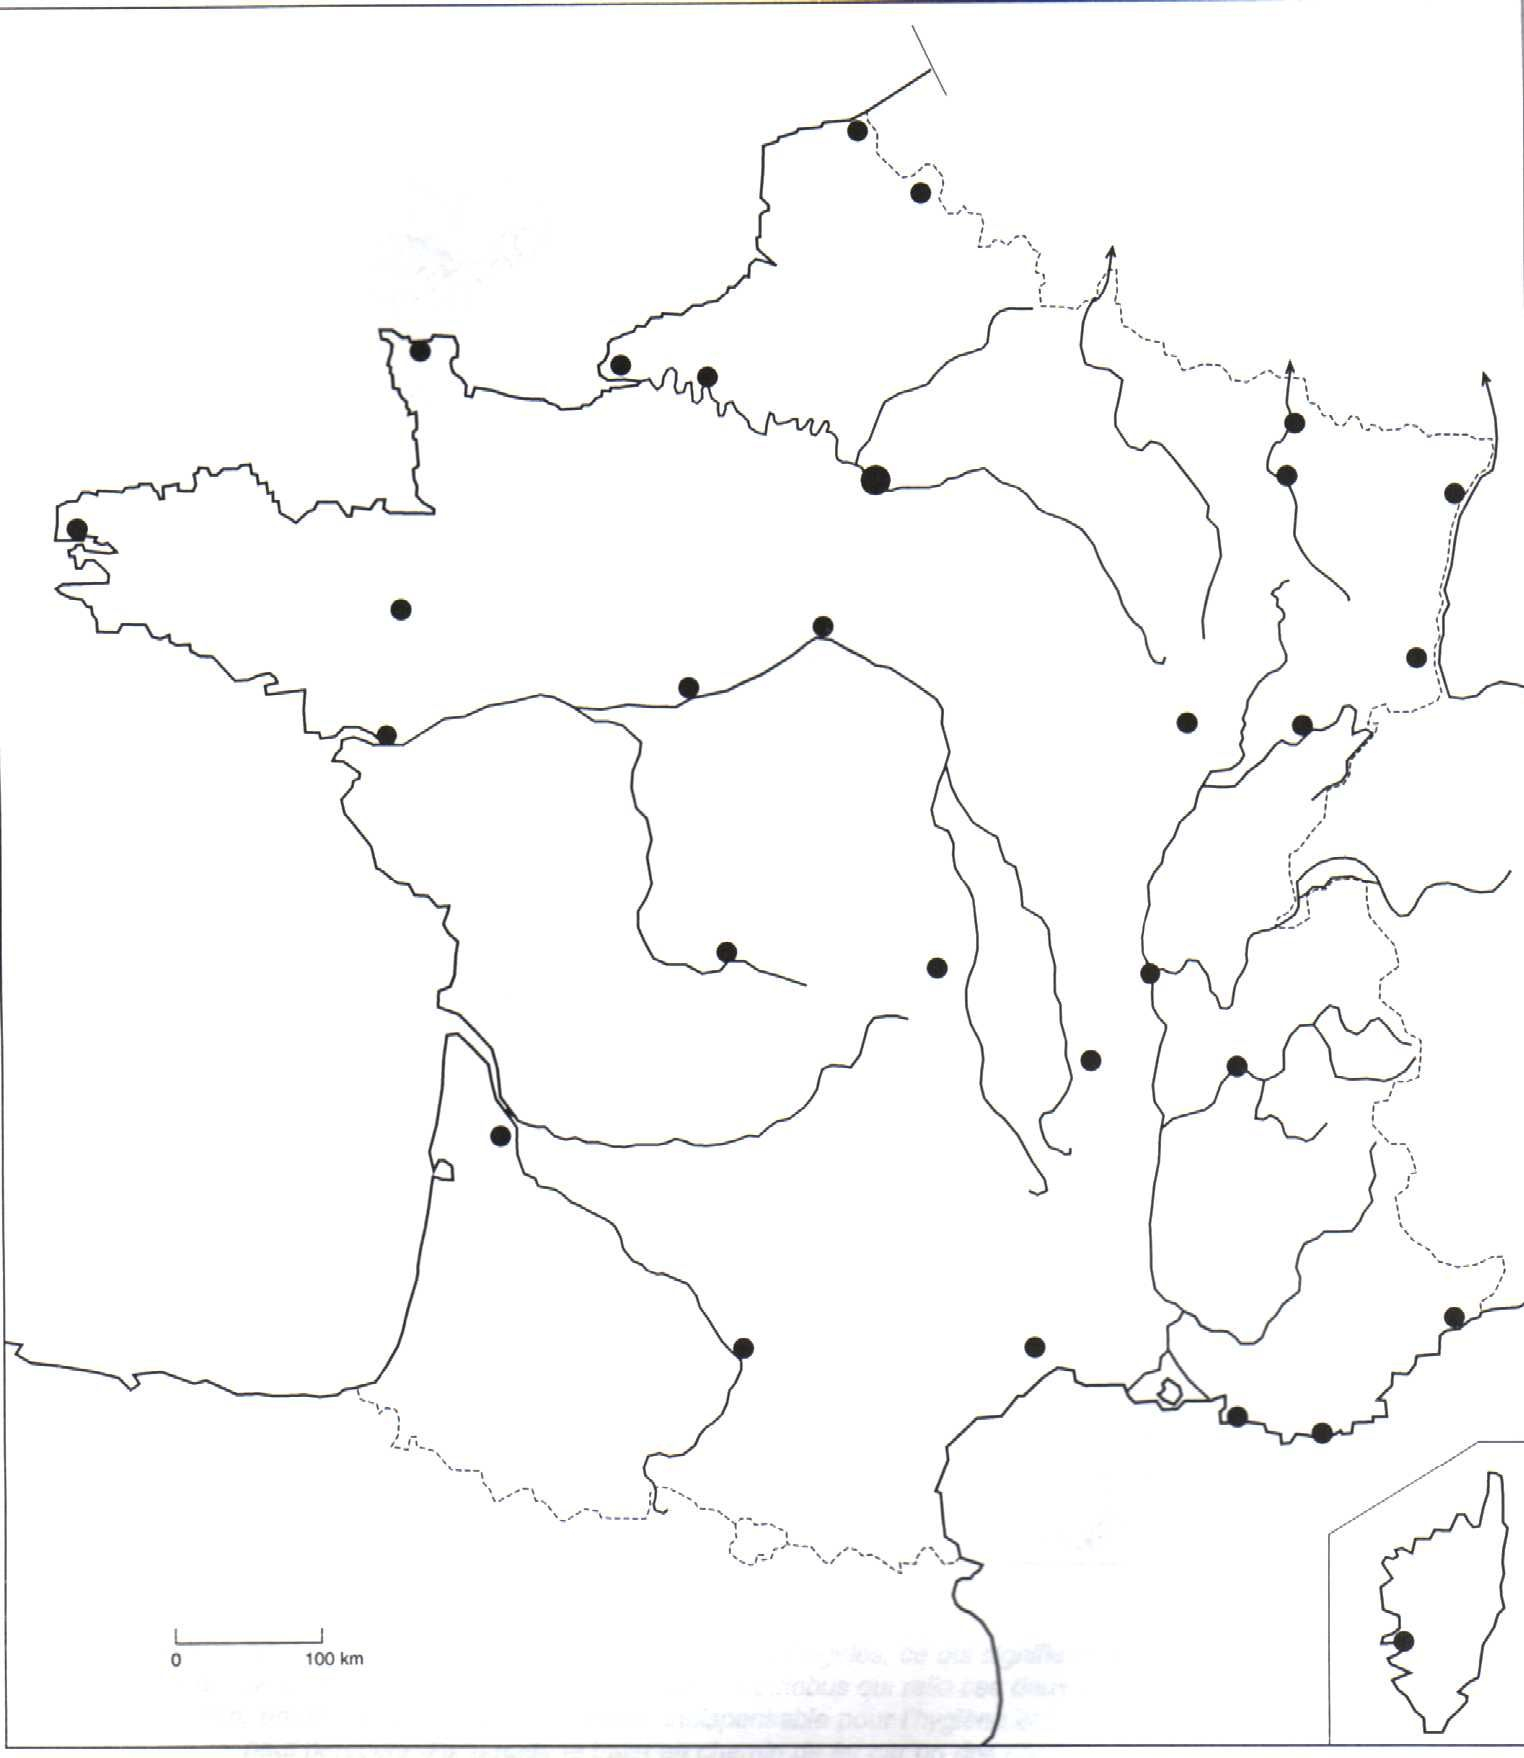 Carte De France Vierge - Recherche Google | Fond De Carte dedans Fond De Carte France Vierge